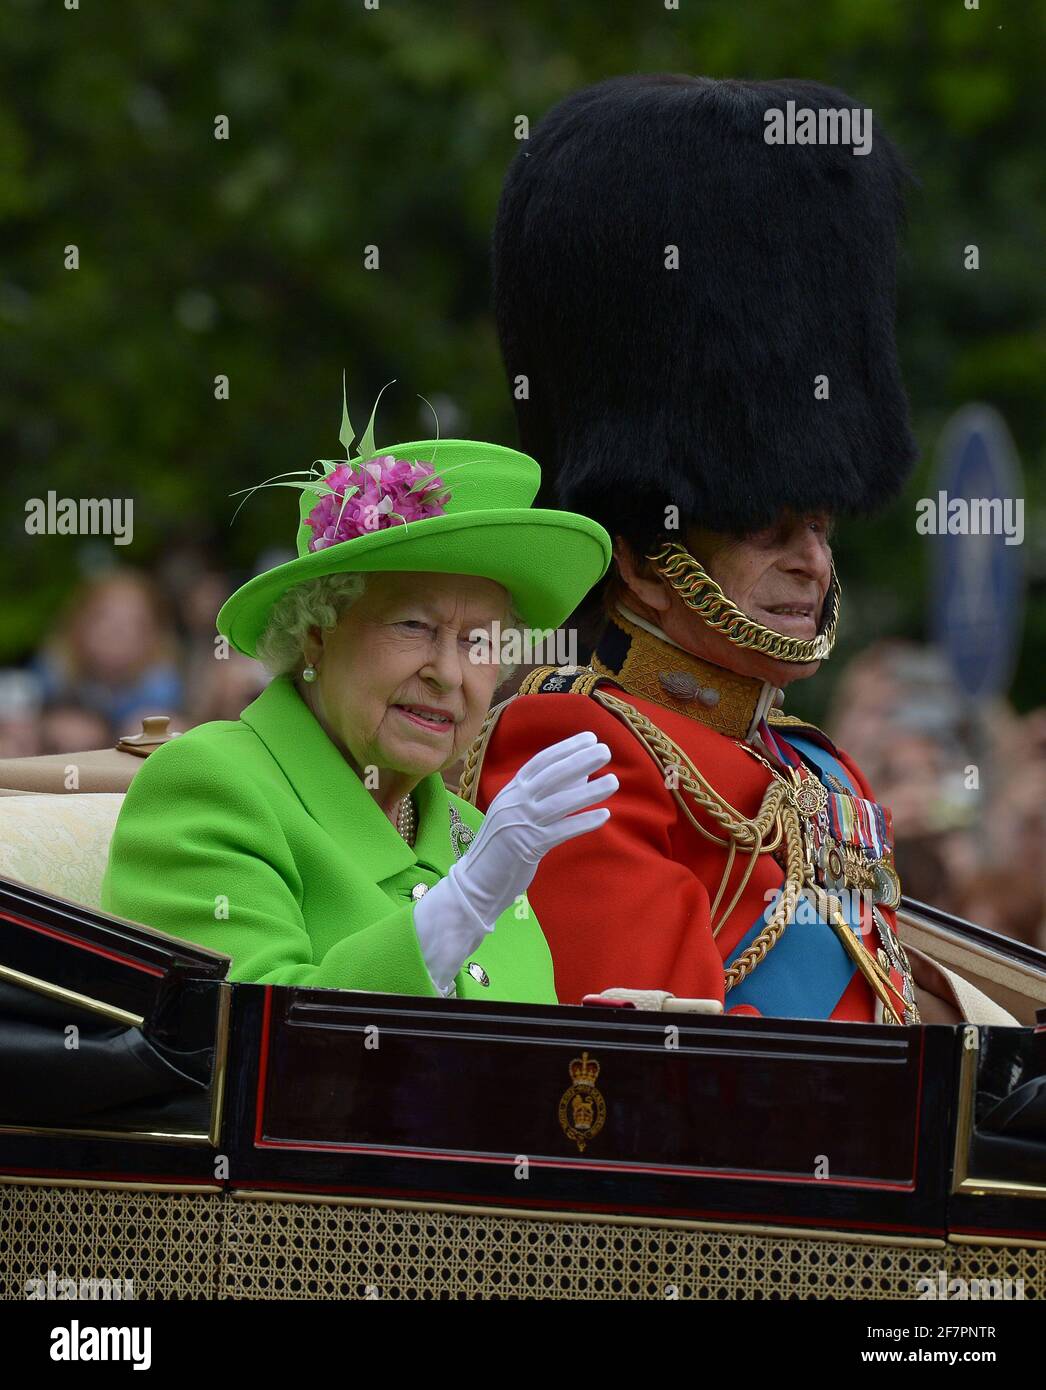 DOSSIER : Prince Philip Dead à 99. ROYAUME-UNI. 11 juin 2016. Prince Philip lors de Trooping la couleur et le Queens anniversaire Parade juin 2016 crédit: MARTIN DALTON/Alay Live News Banque D'Images